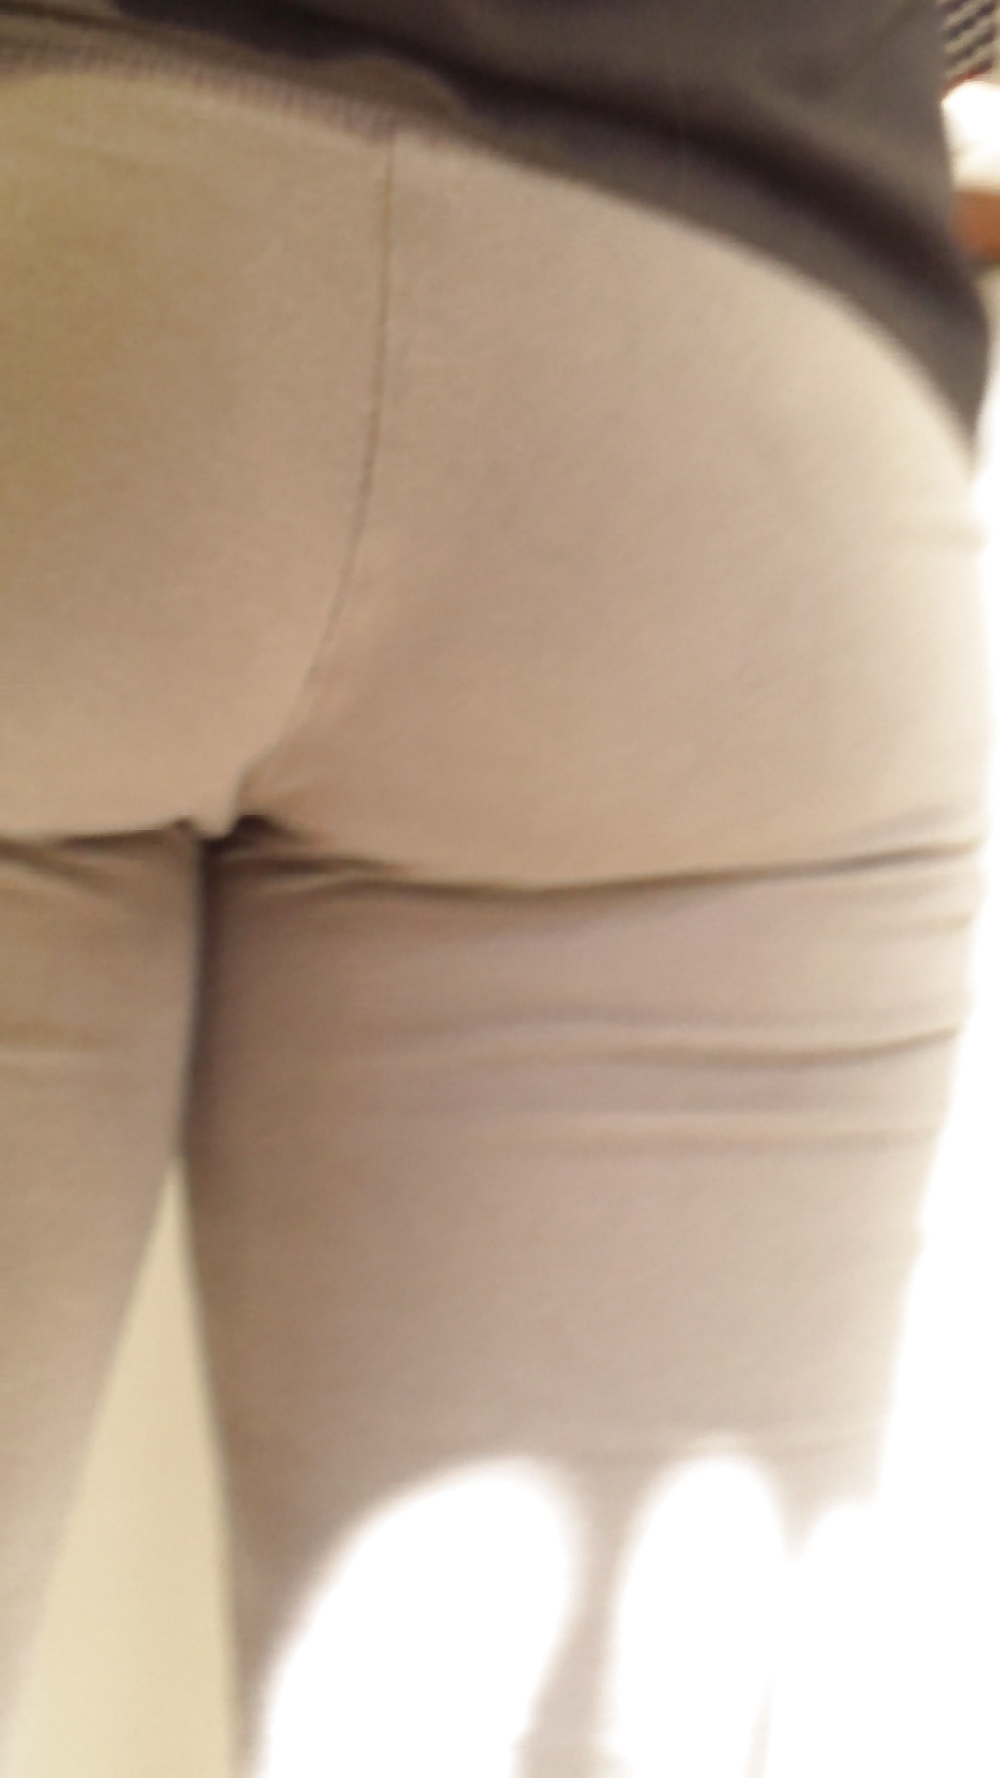 Teen ass & butt in sweatpants #37337267